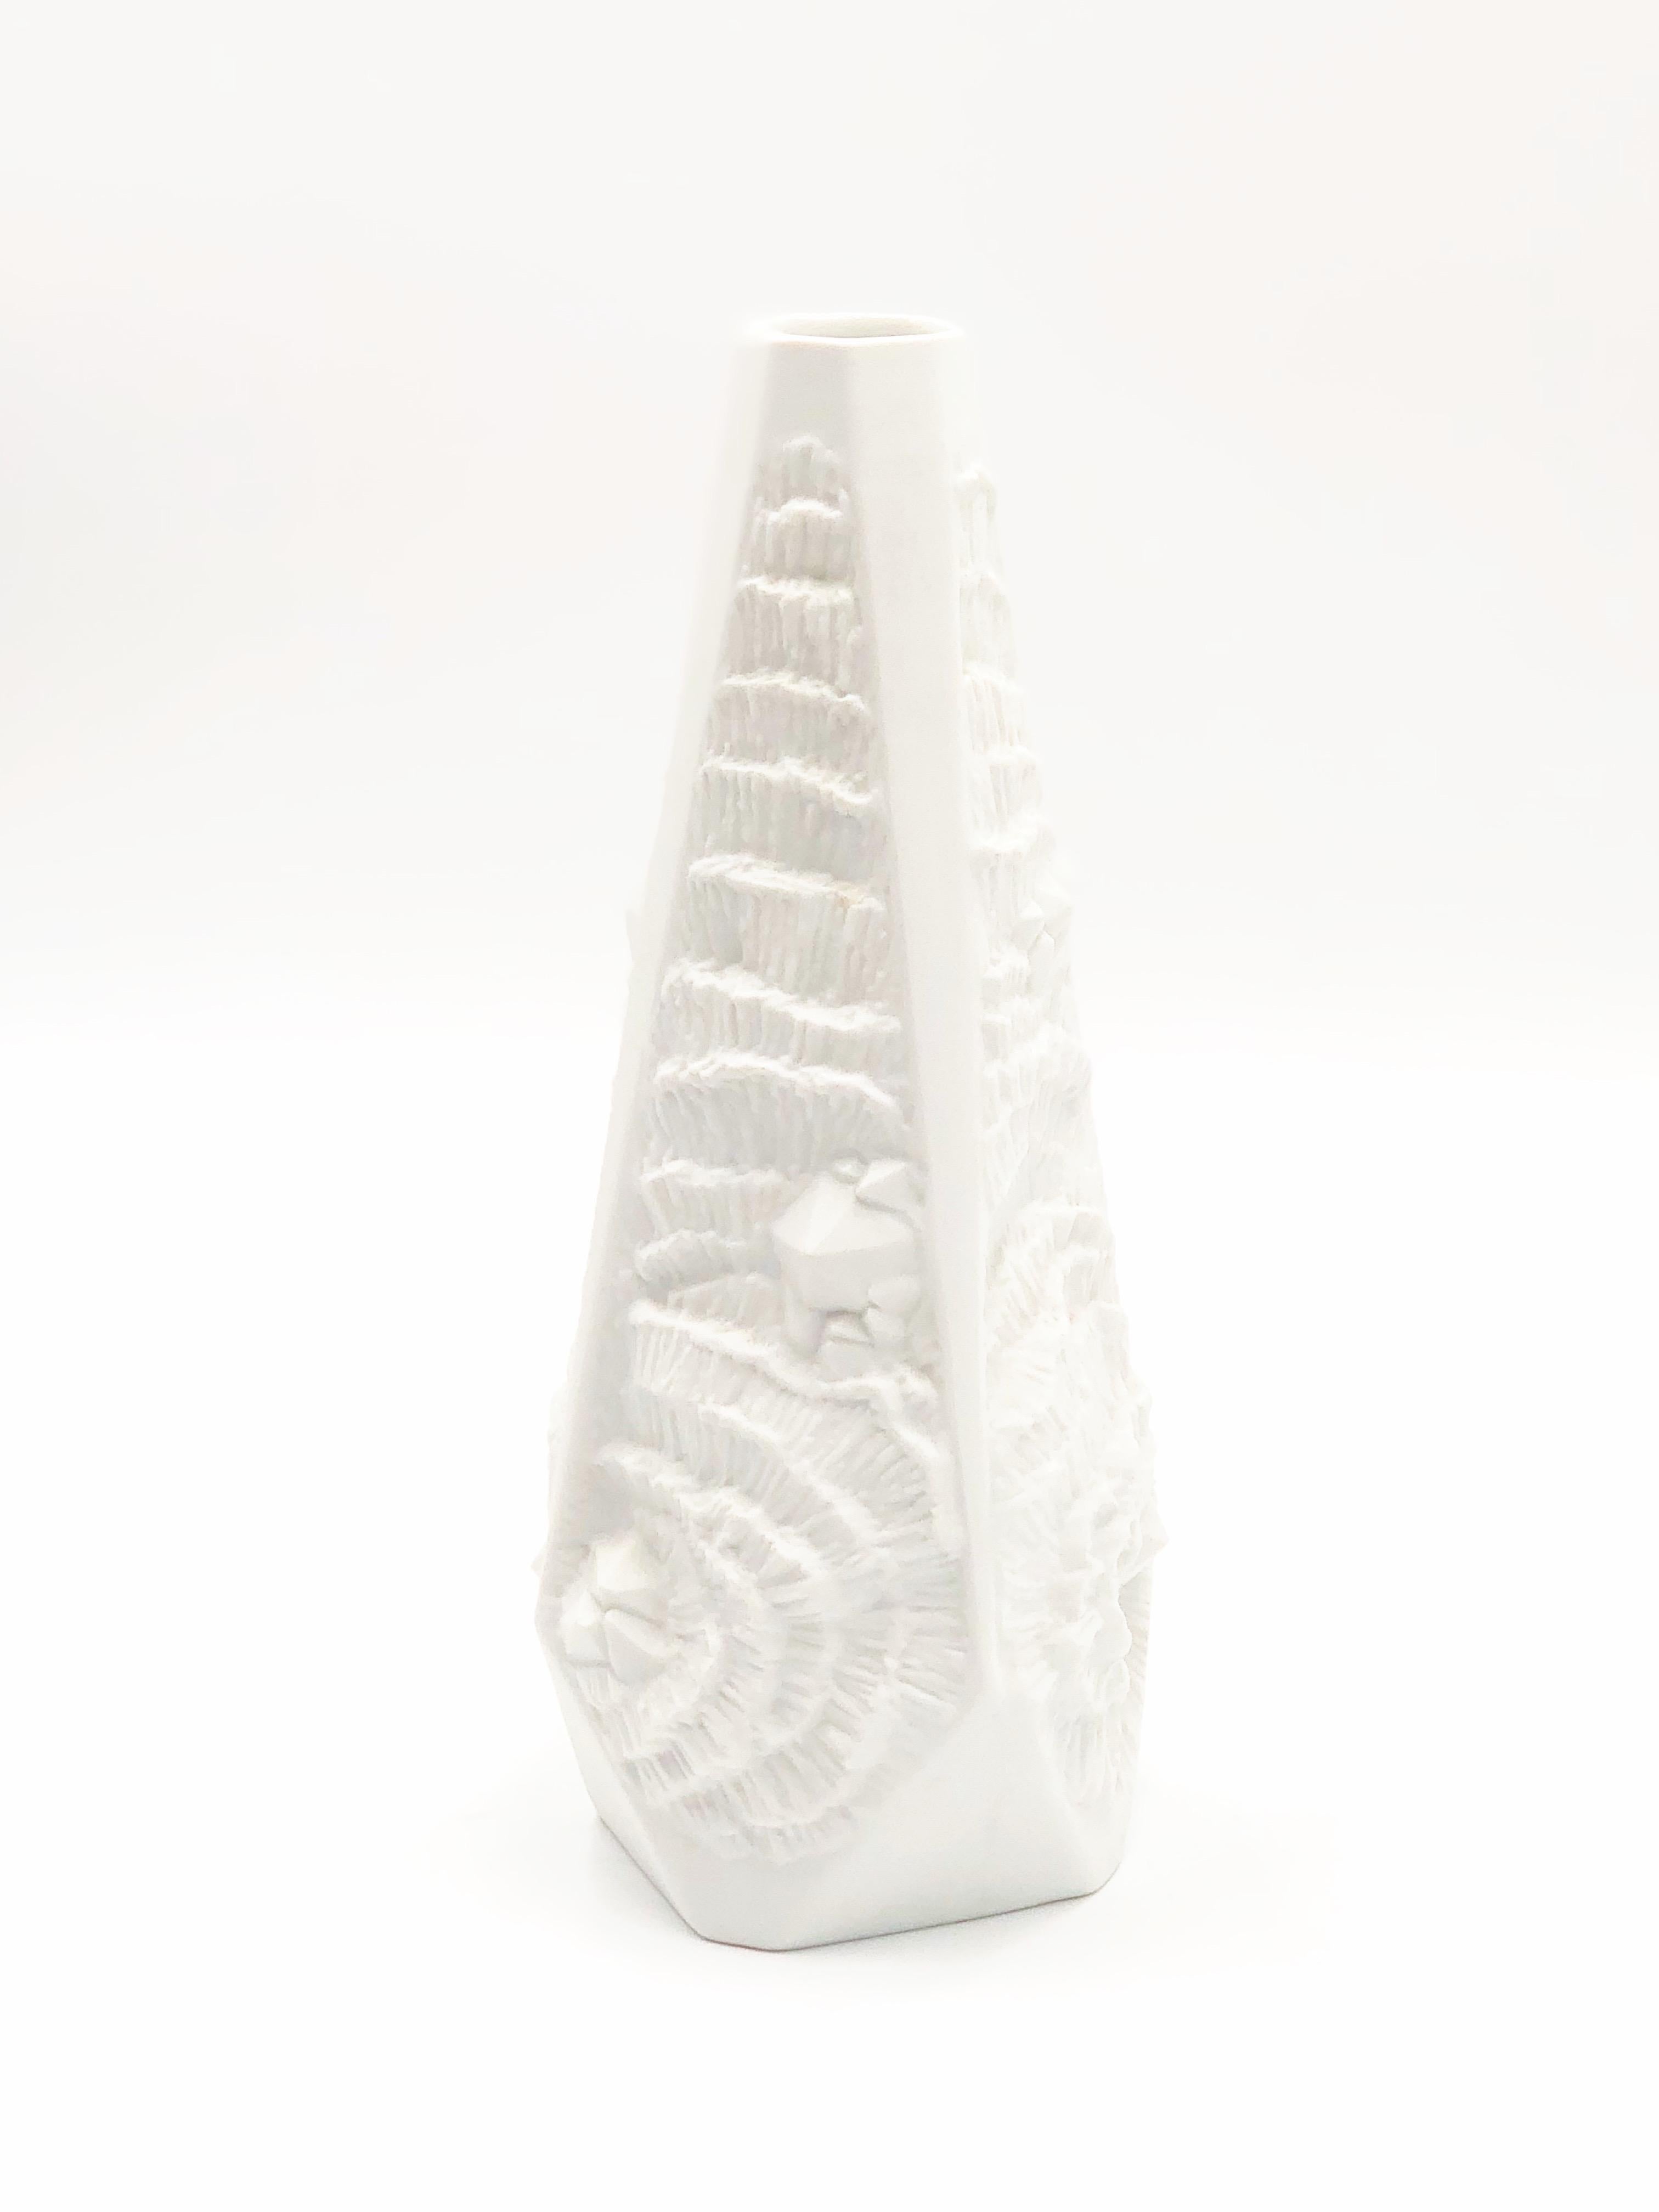 Wunderschöne dekorative Vintage-Vase aus unglasiertem Porzellan mit feiner Knochenstruktur von AK Kaiser, ca. 1970er Jahre.

Einzelheiten:
- Maße: 9.5